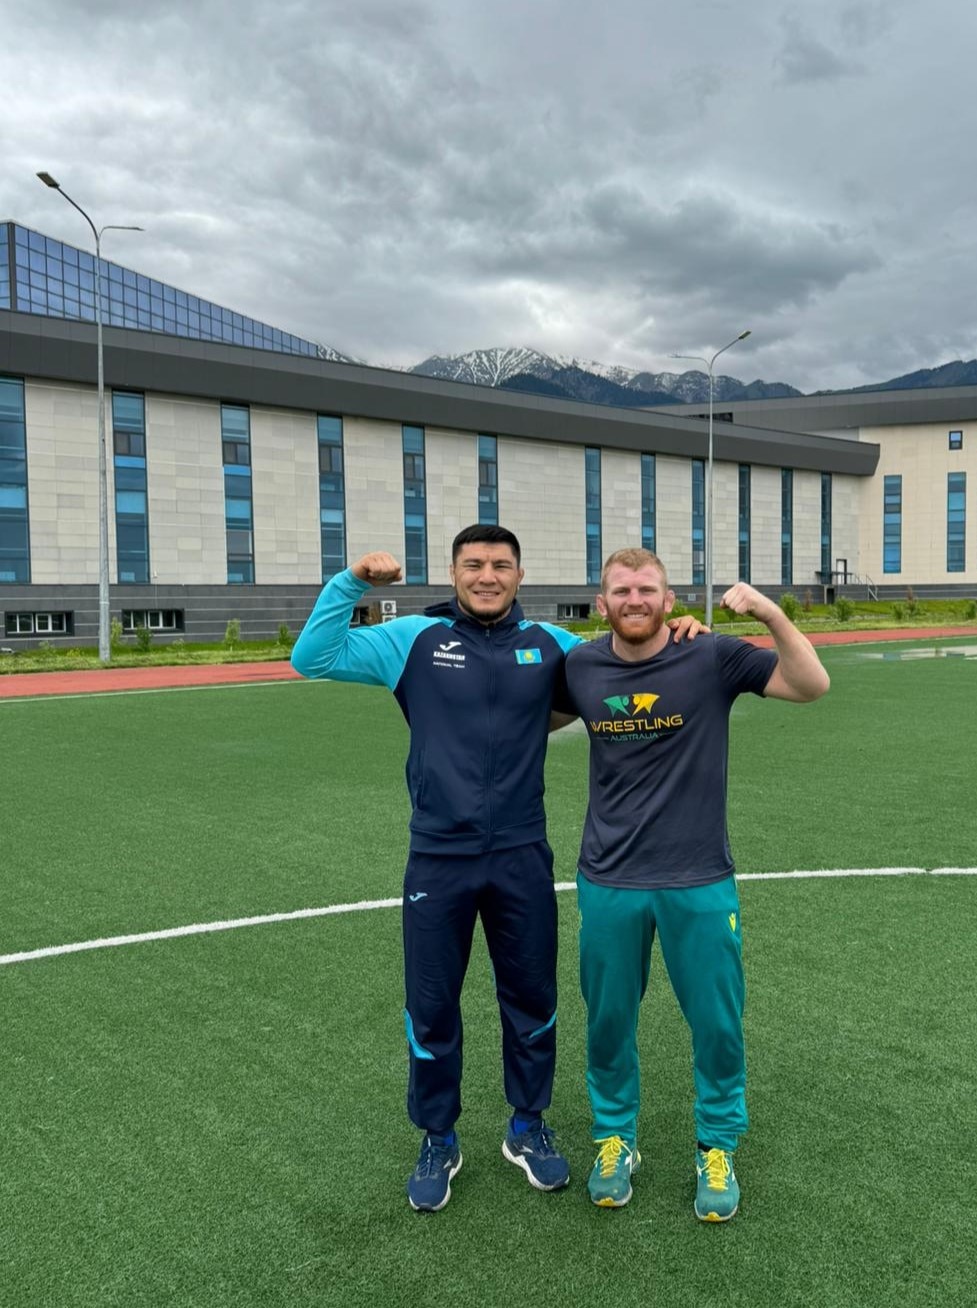 两名男子手挽手站在足球场上，展示着自己的肌肉。两人都面带微笑。他们身后是建筑物和山脉。